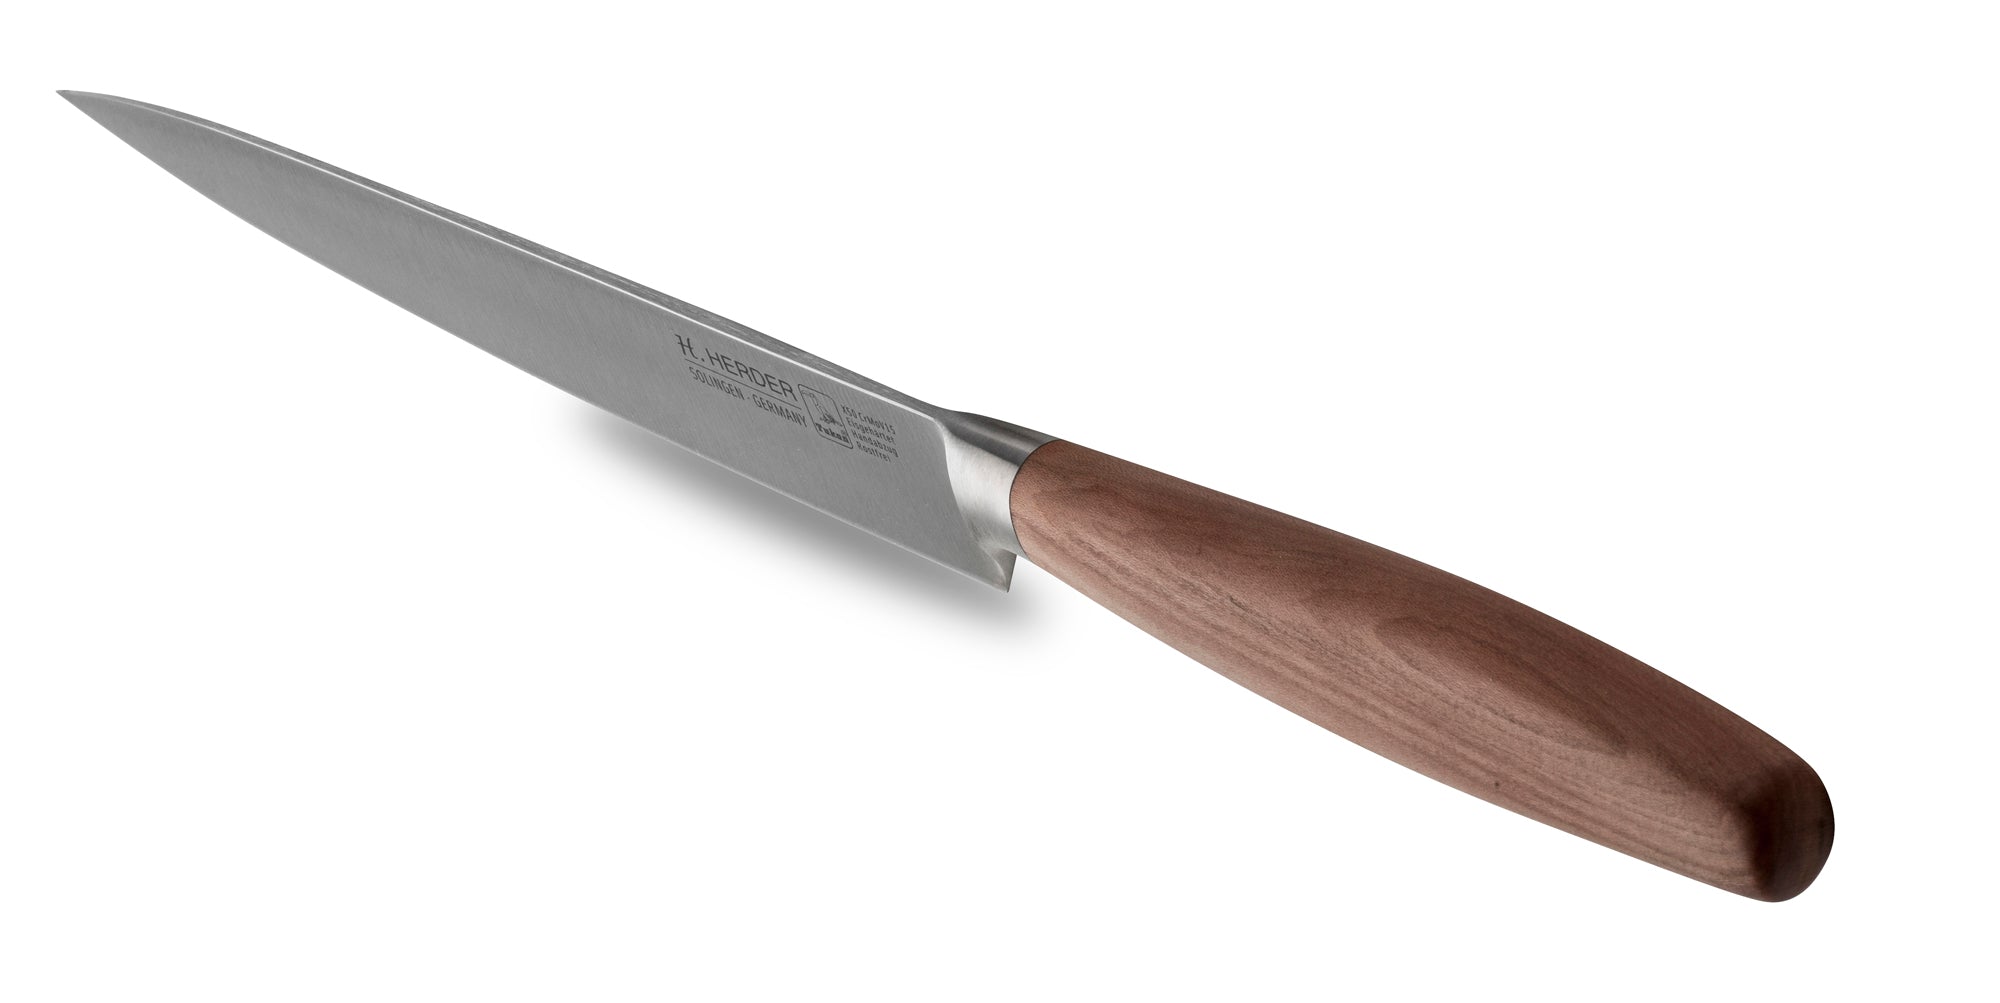 Couteau à jambon Eterno, bois de prunier, longueur de lame 21cm, forgé